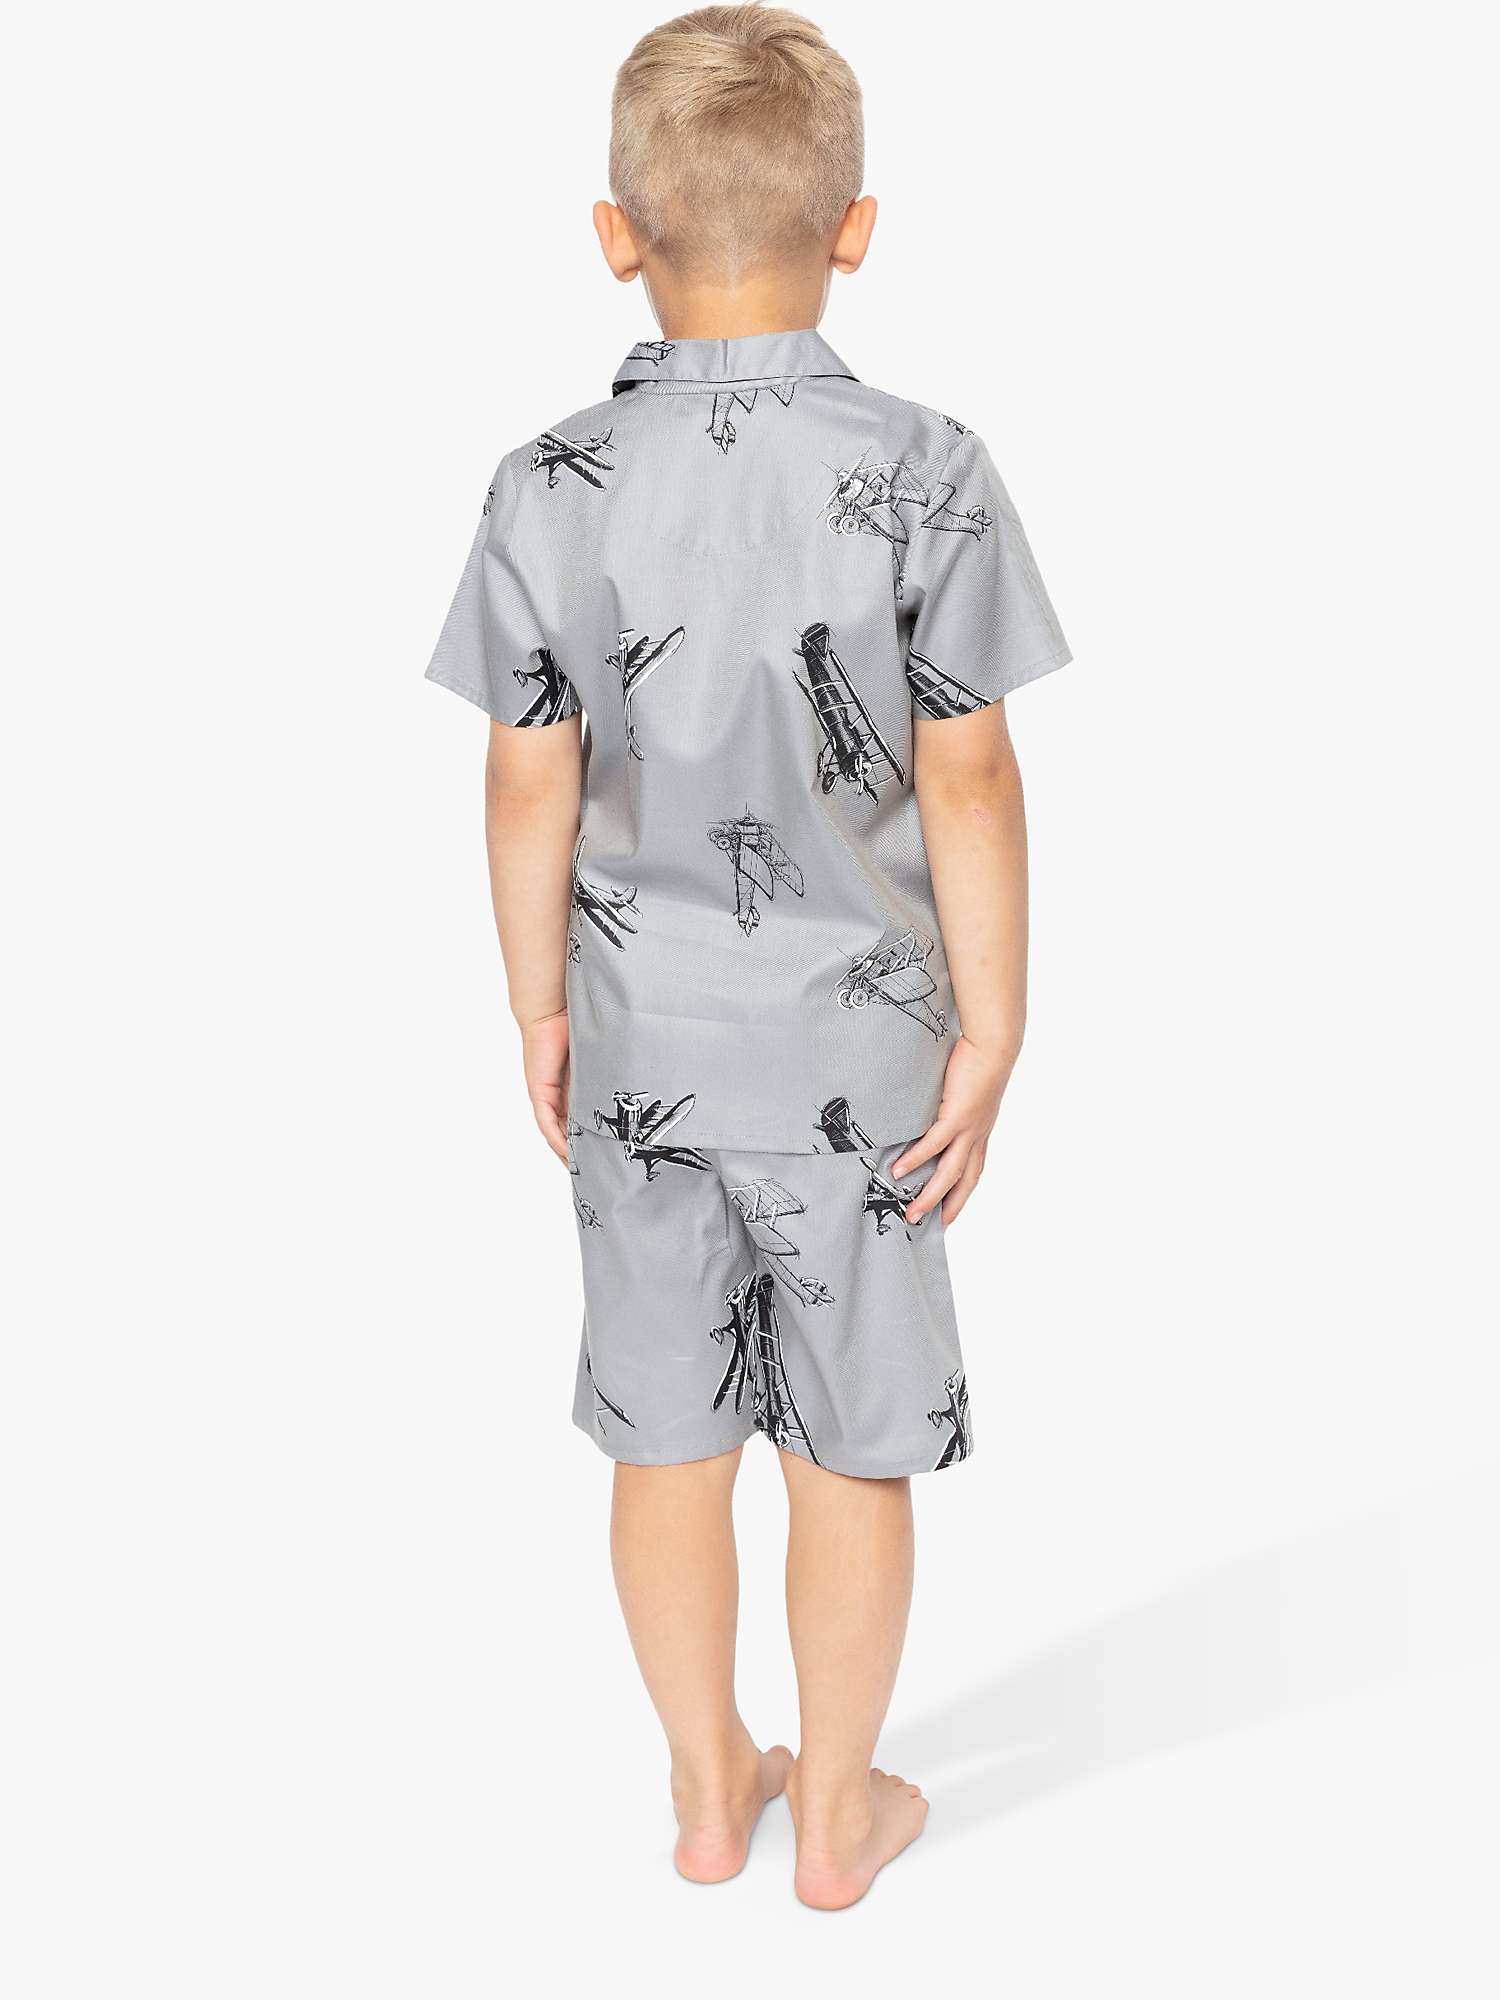 Buy Cyberjammies Kids' Samuel Plane Print Shortie Pyjamas, Grey Online at johnlewis.com